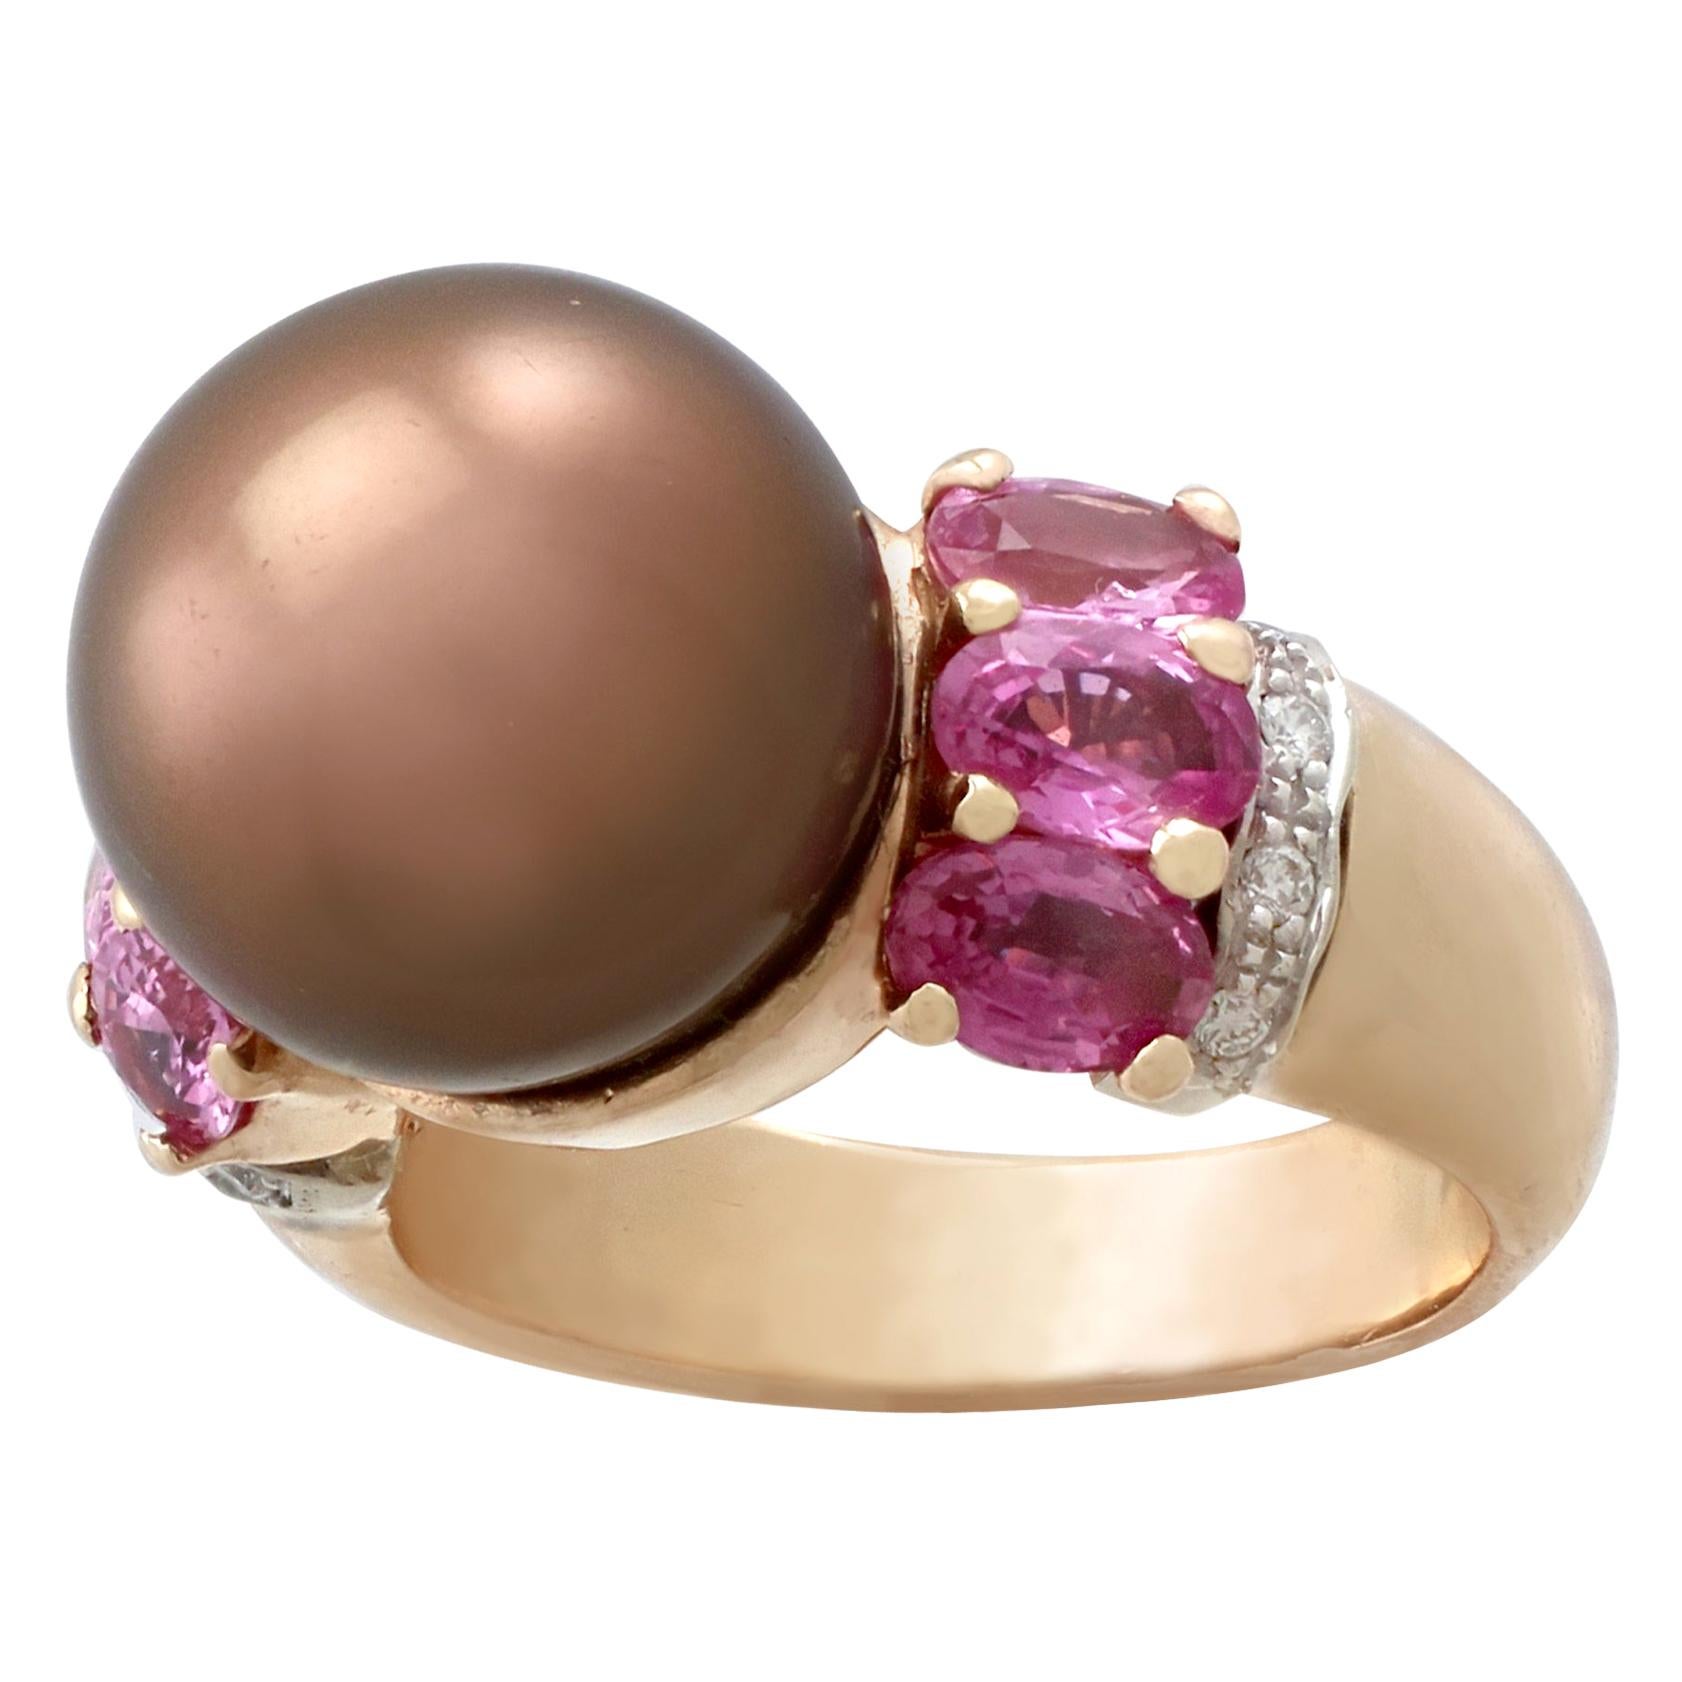 Eine atemberaubende Vintage Schokolade Perle und 2,95Ct rosa Saphir, 0,08Ct Diamant und 18k Gold Kleid Ring; Teil unserer vielfältigen Vintage-Schmuck-Kollektionen.

Dieser atemberaubende, feine und beeindruckende Ring mit Perlen und rosa Saphiren